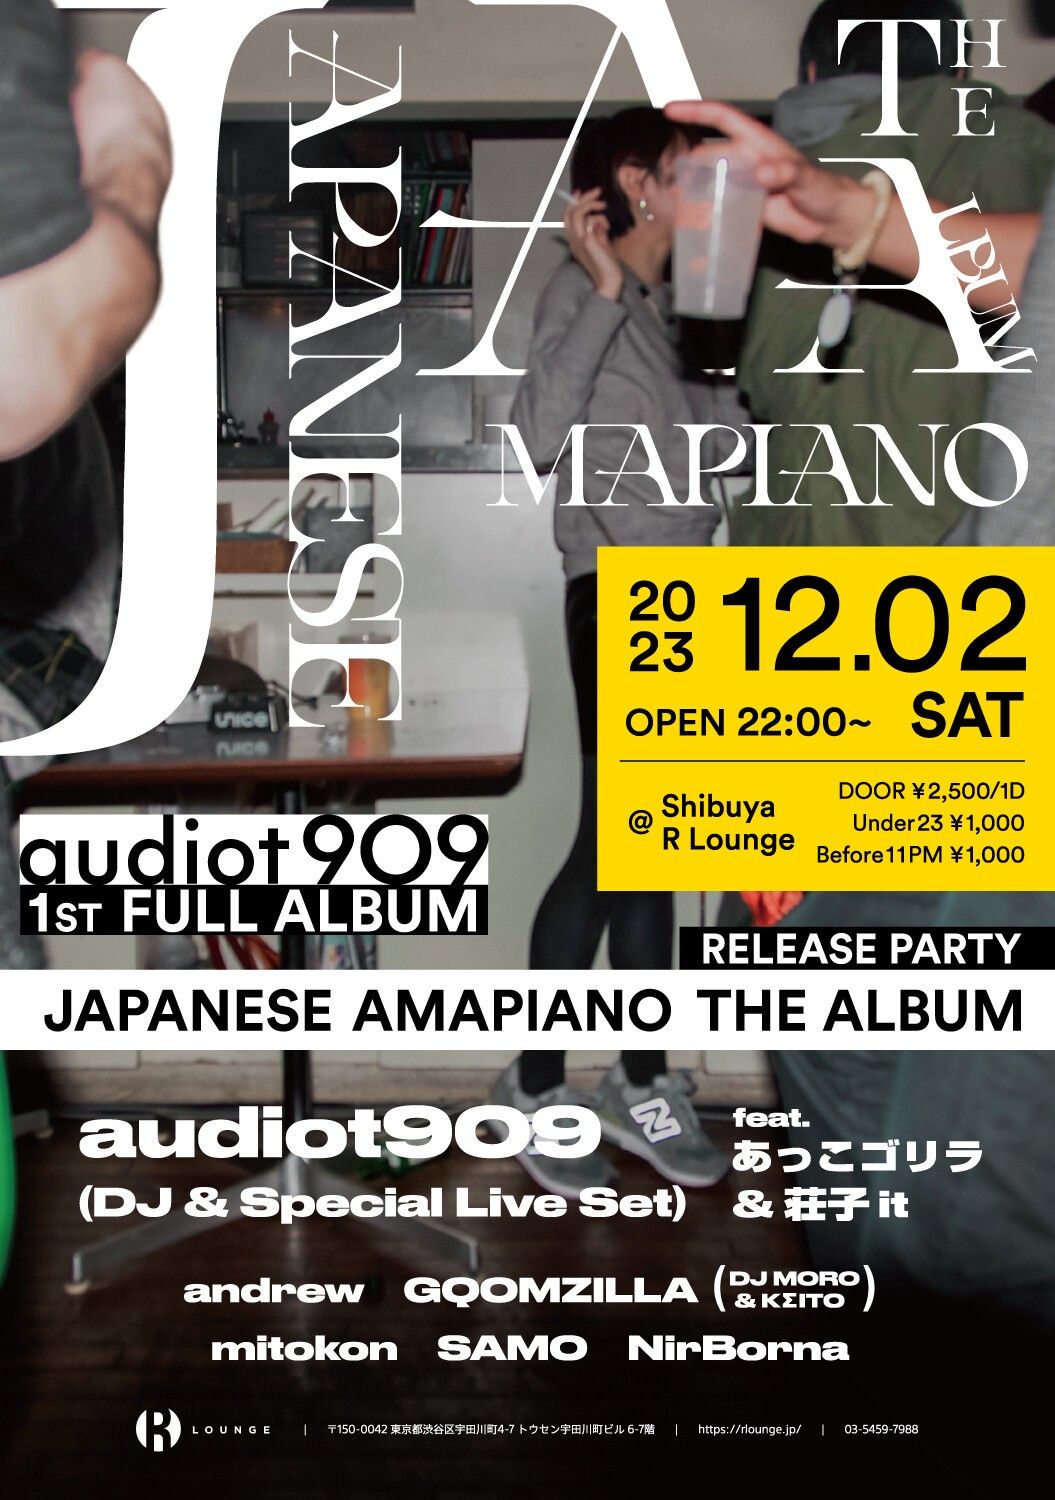 audiot909 1st Full Album “JAPANESE AMAPIANO THE ALBUM” RELEASE 